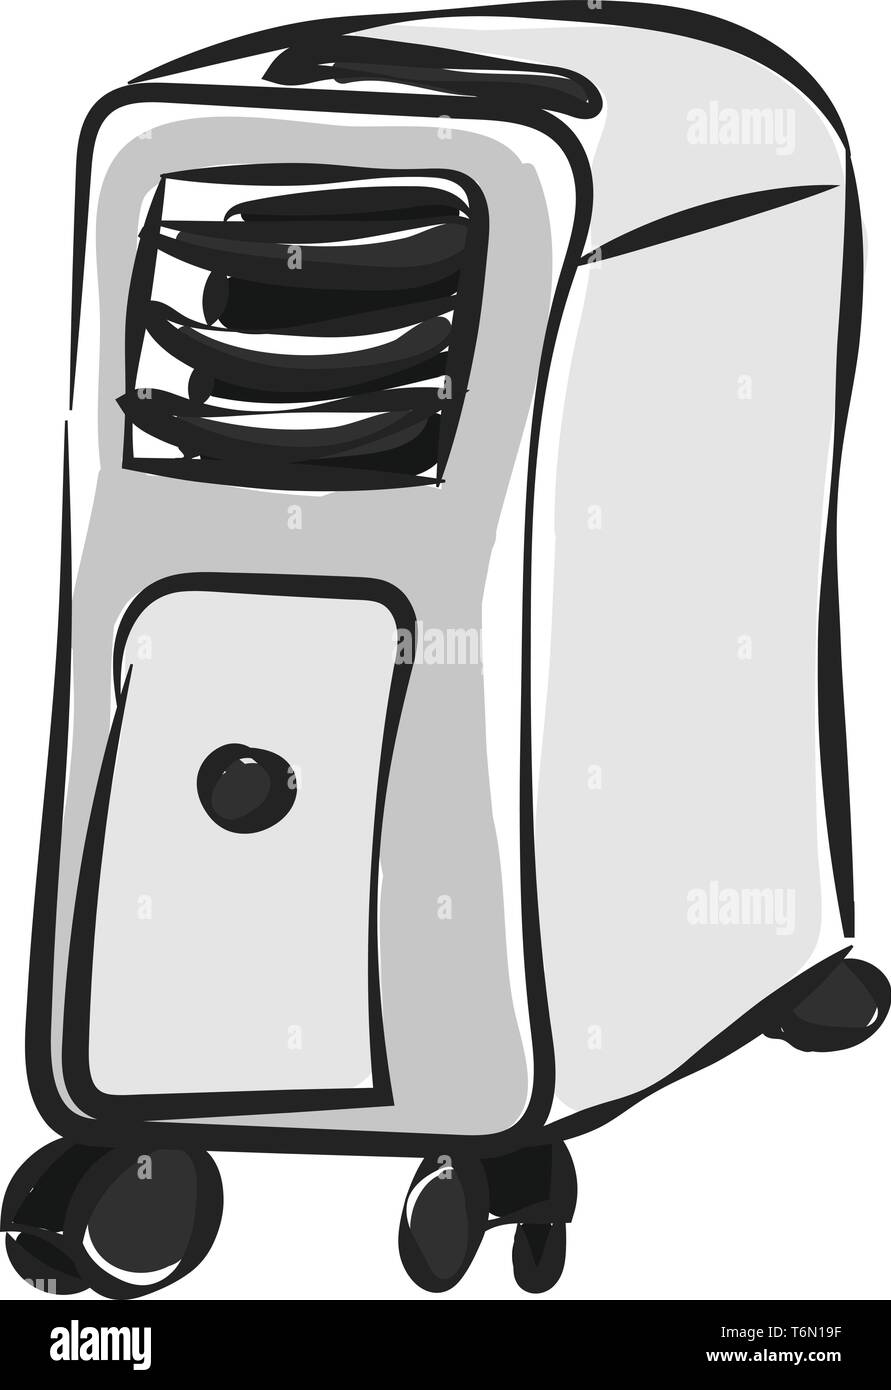 Un climatiseur avec les plaquettes et de refroidissement concepteur de chariots et d'entrée d'eau à l'endroit offre un look élégant couleur scénario drawi Illustration de Vecteur